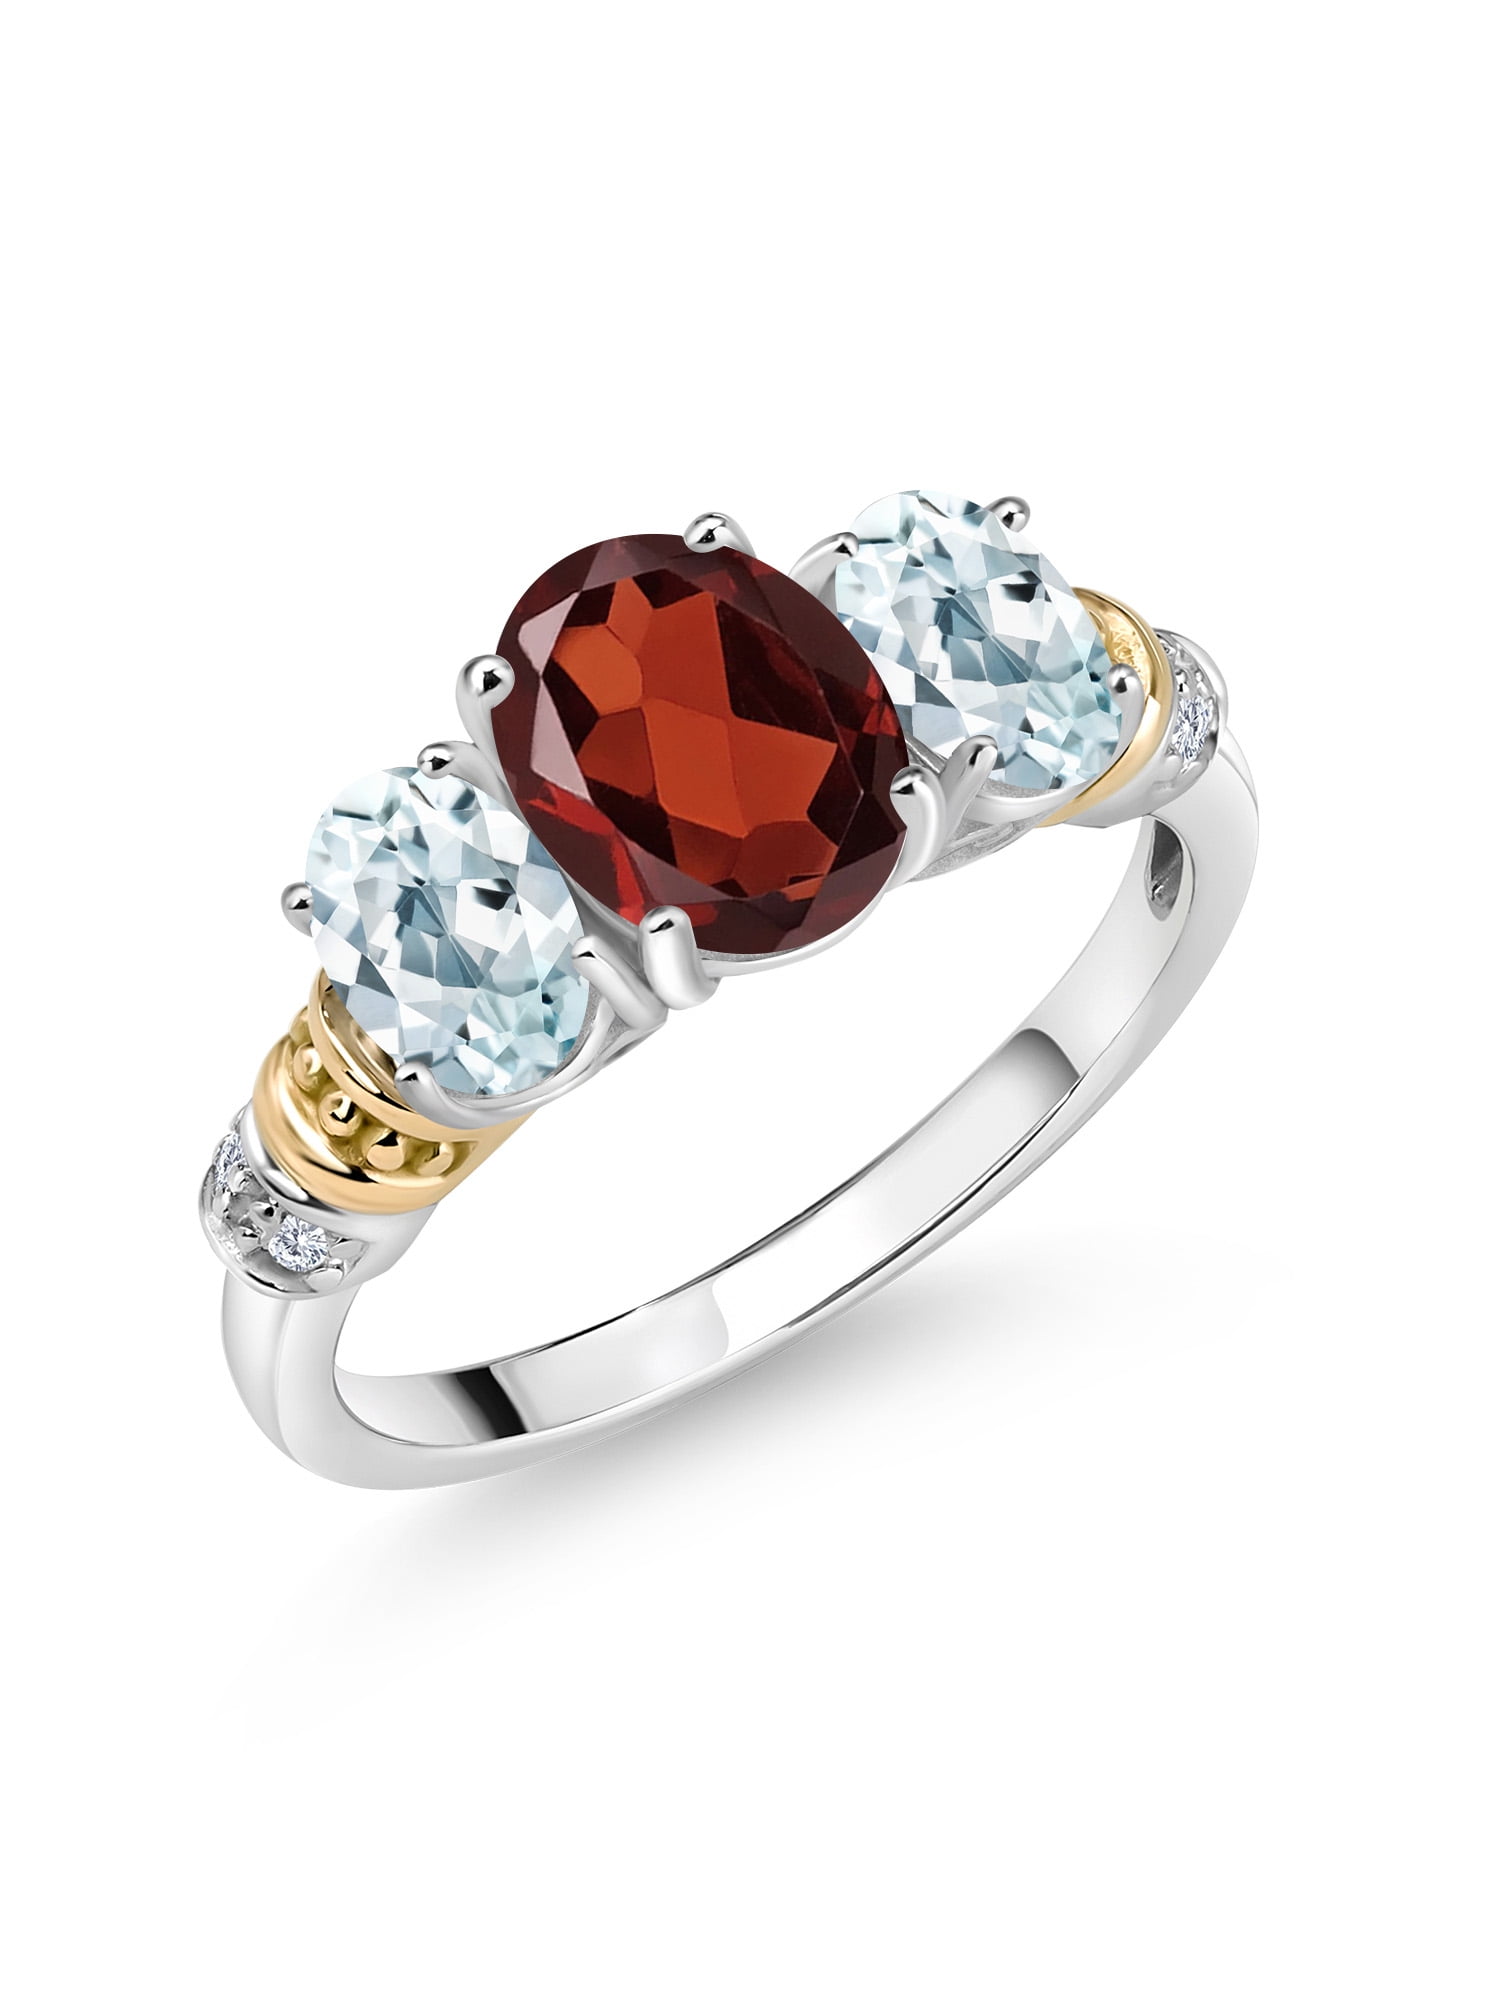 Raw Garnet Engagement Ring, Rough Aquamarine Ring | Garnet engagement ring,  Sterling silver rings bands, Rough aquamarine ring